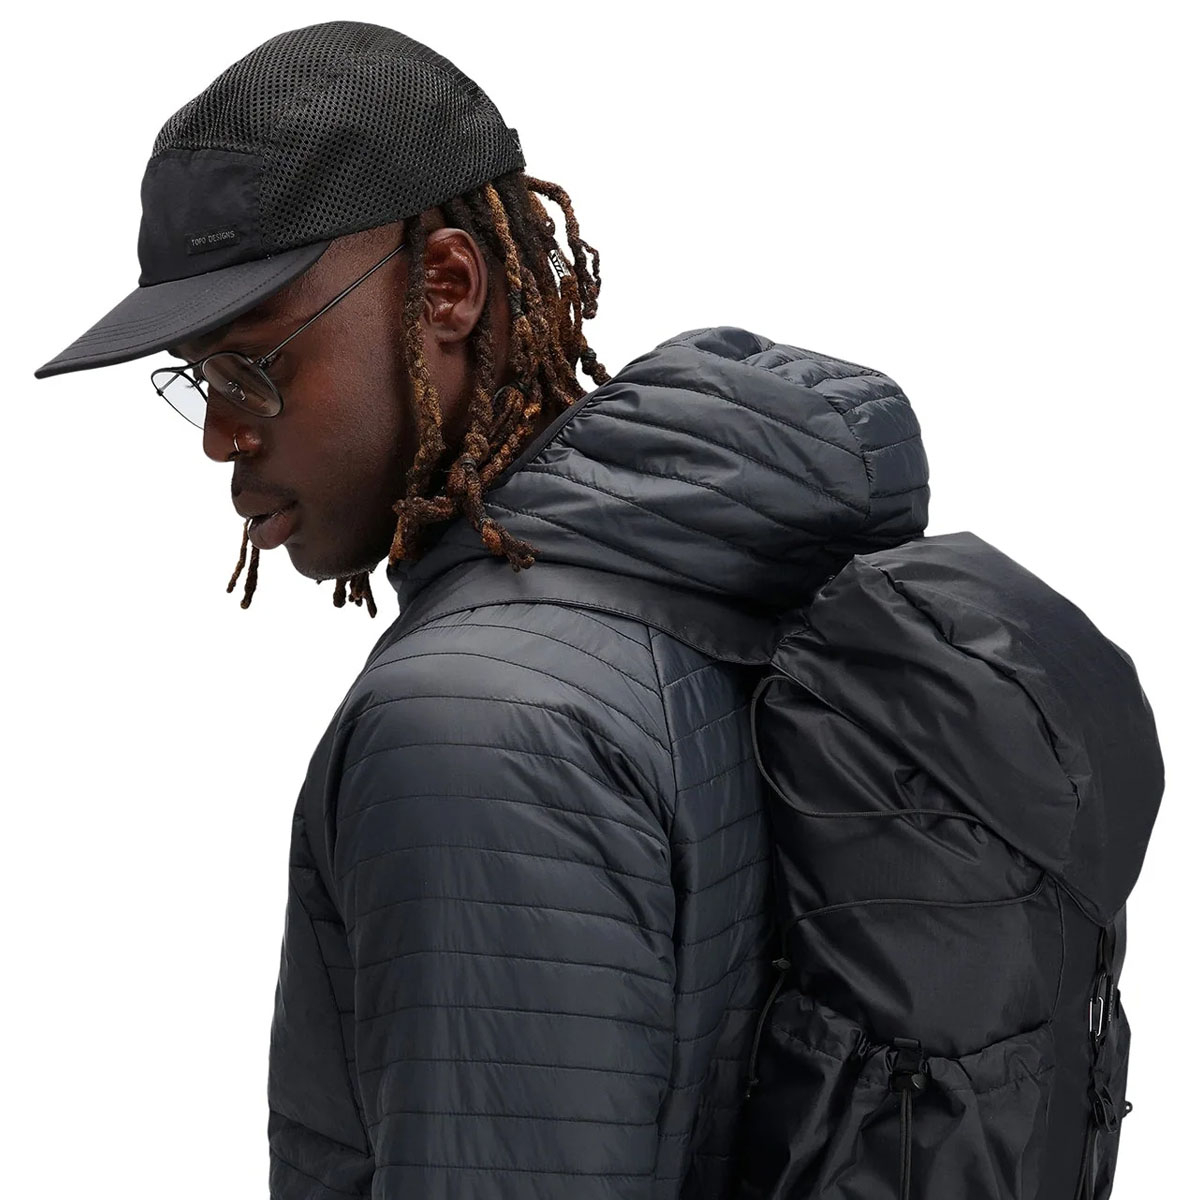 Topo Designs Global Hat Black, Leichte Kappe, gemacht für einfaches Reisen